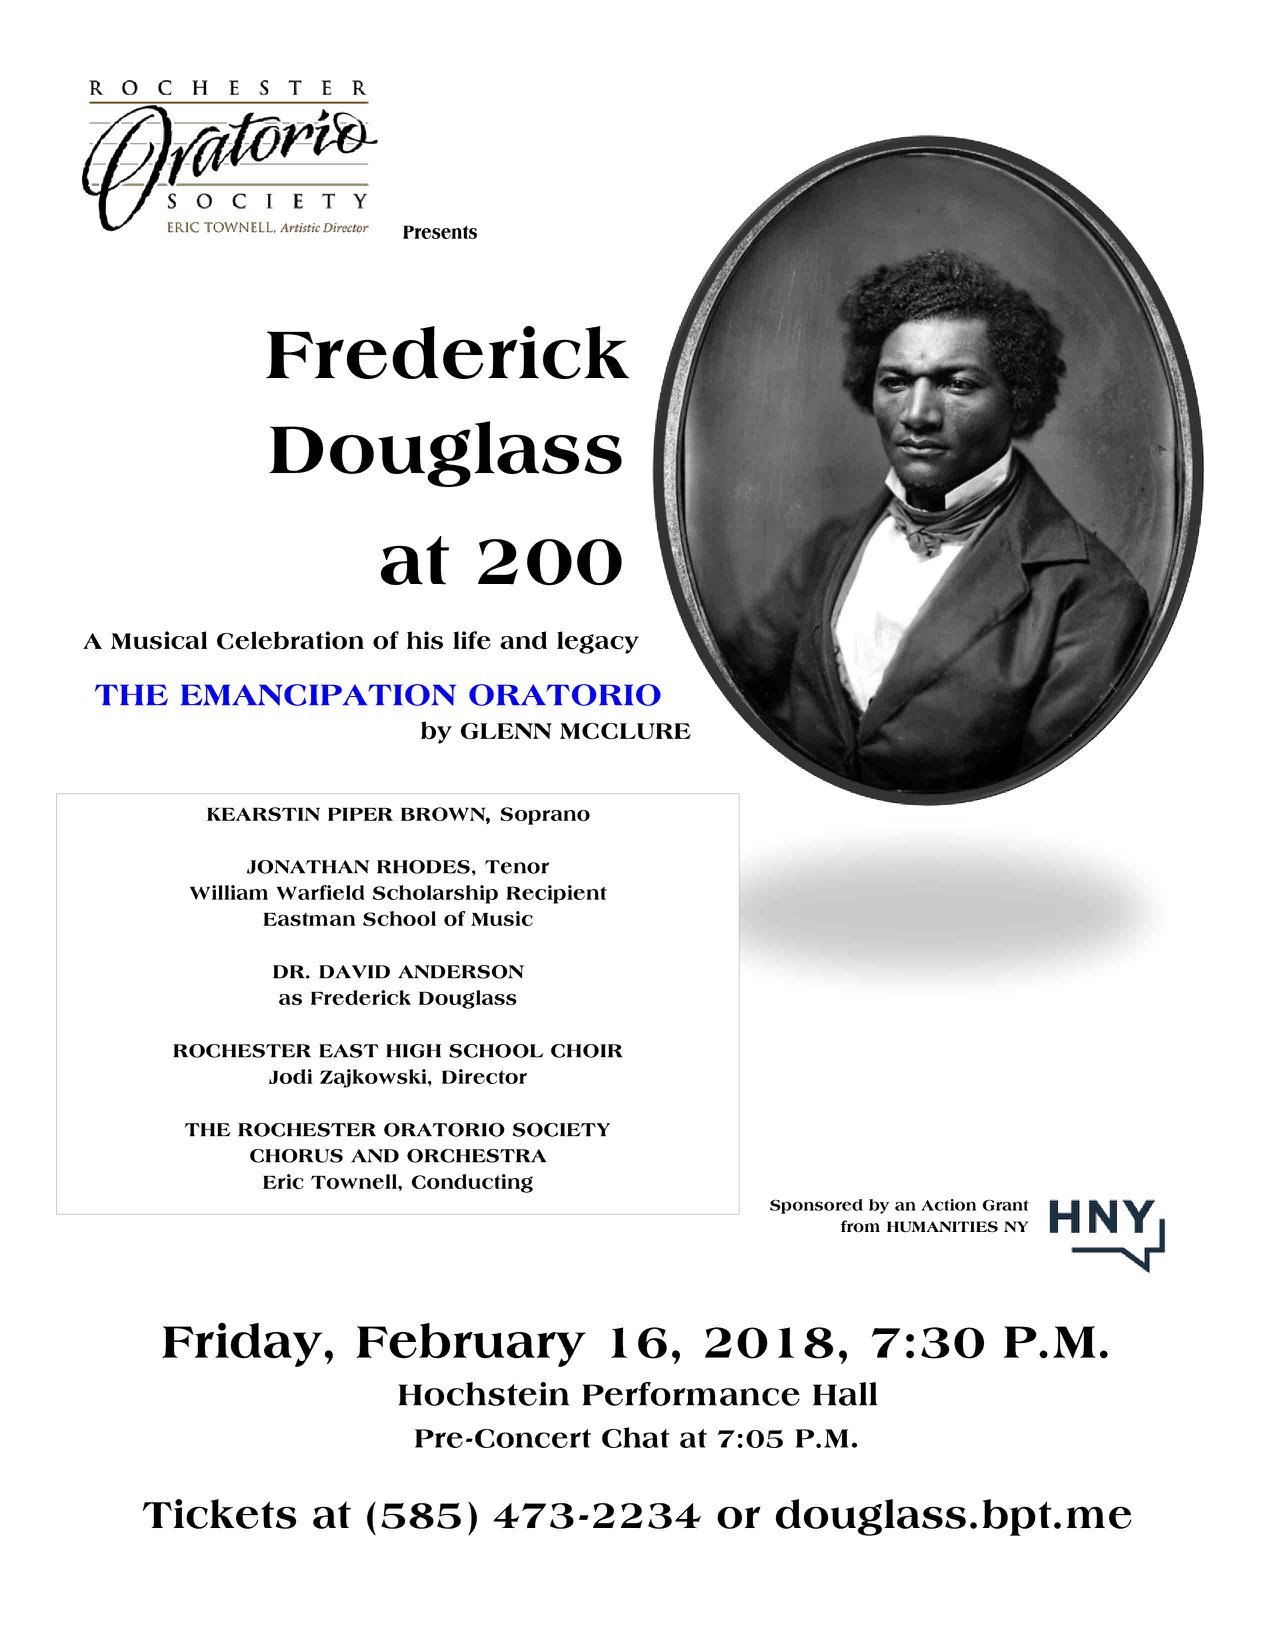 Fredrick Douglass Concert